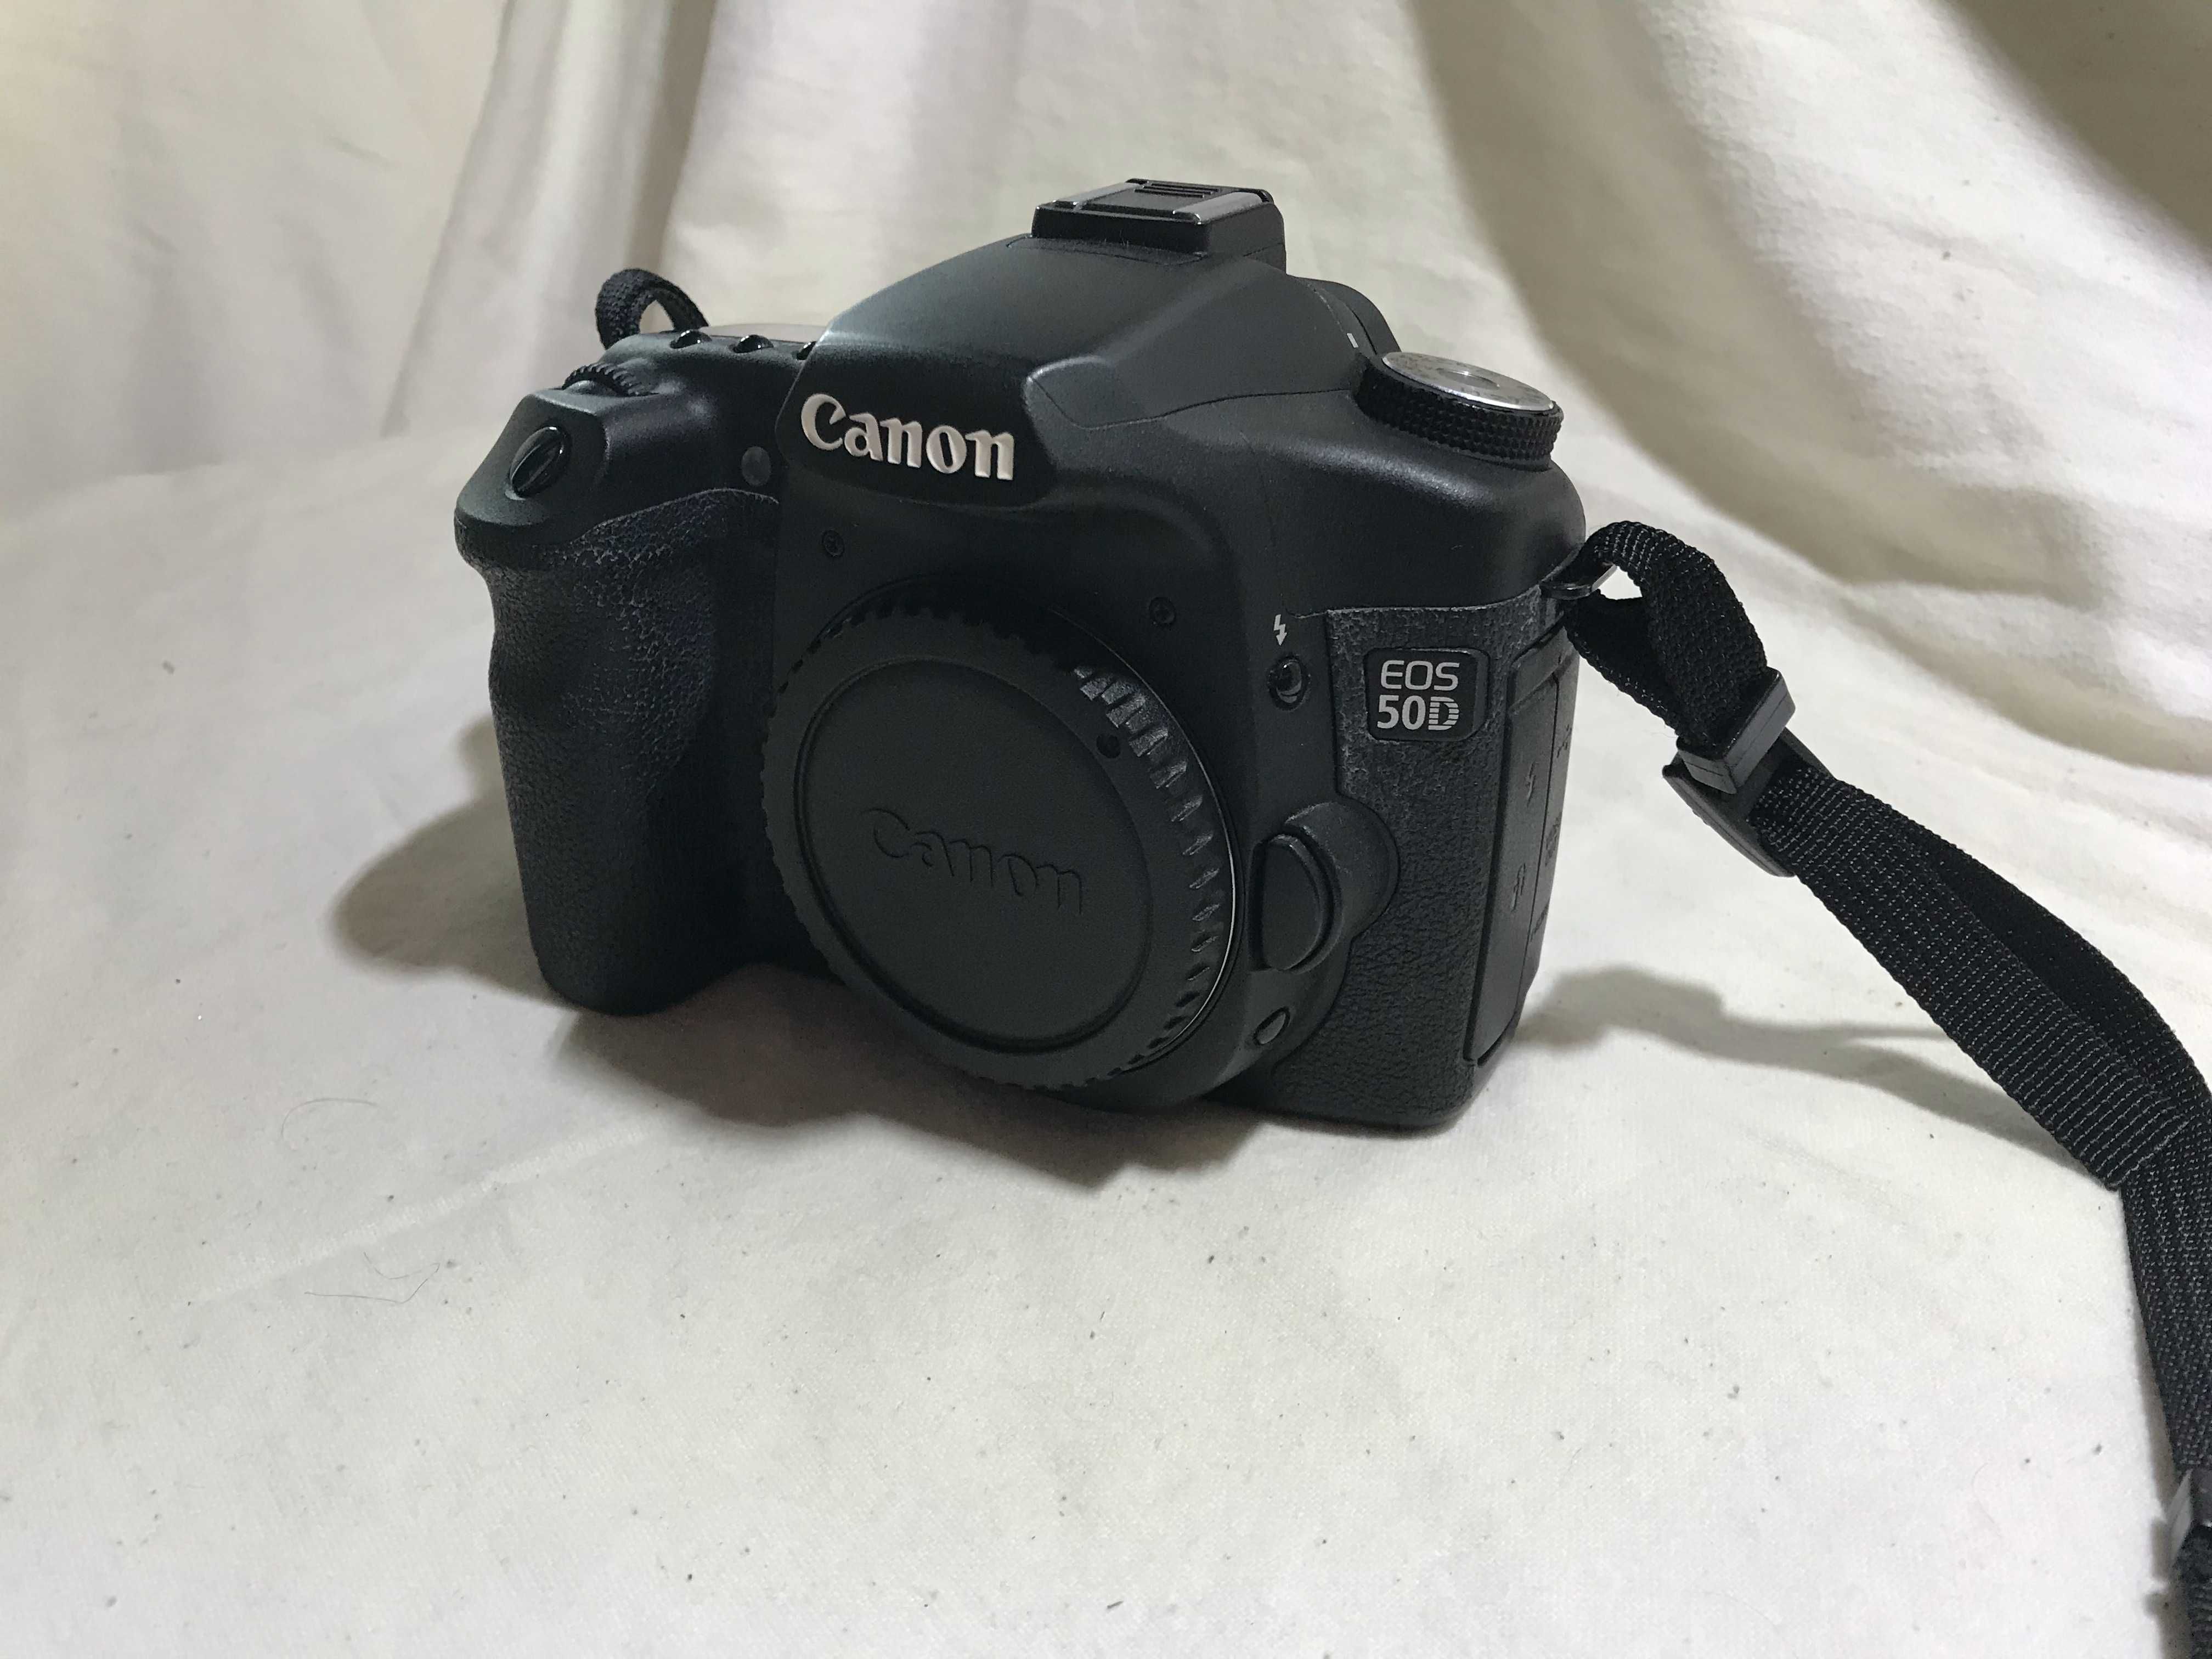 Camaera Fotografica Canon EOS 50D (291)